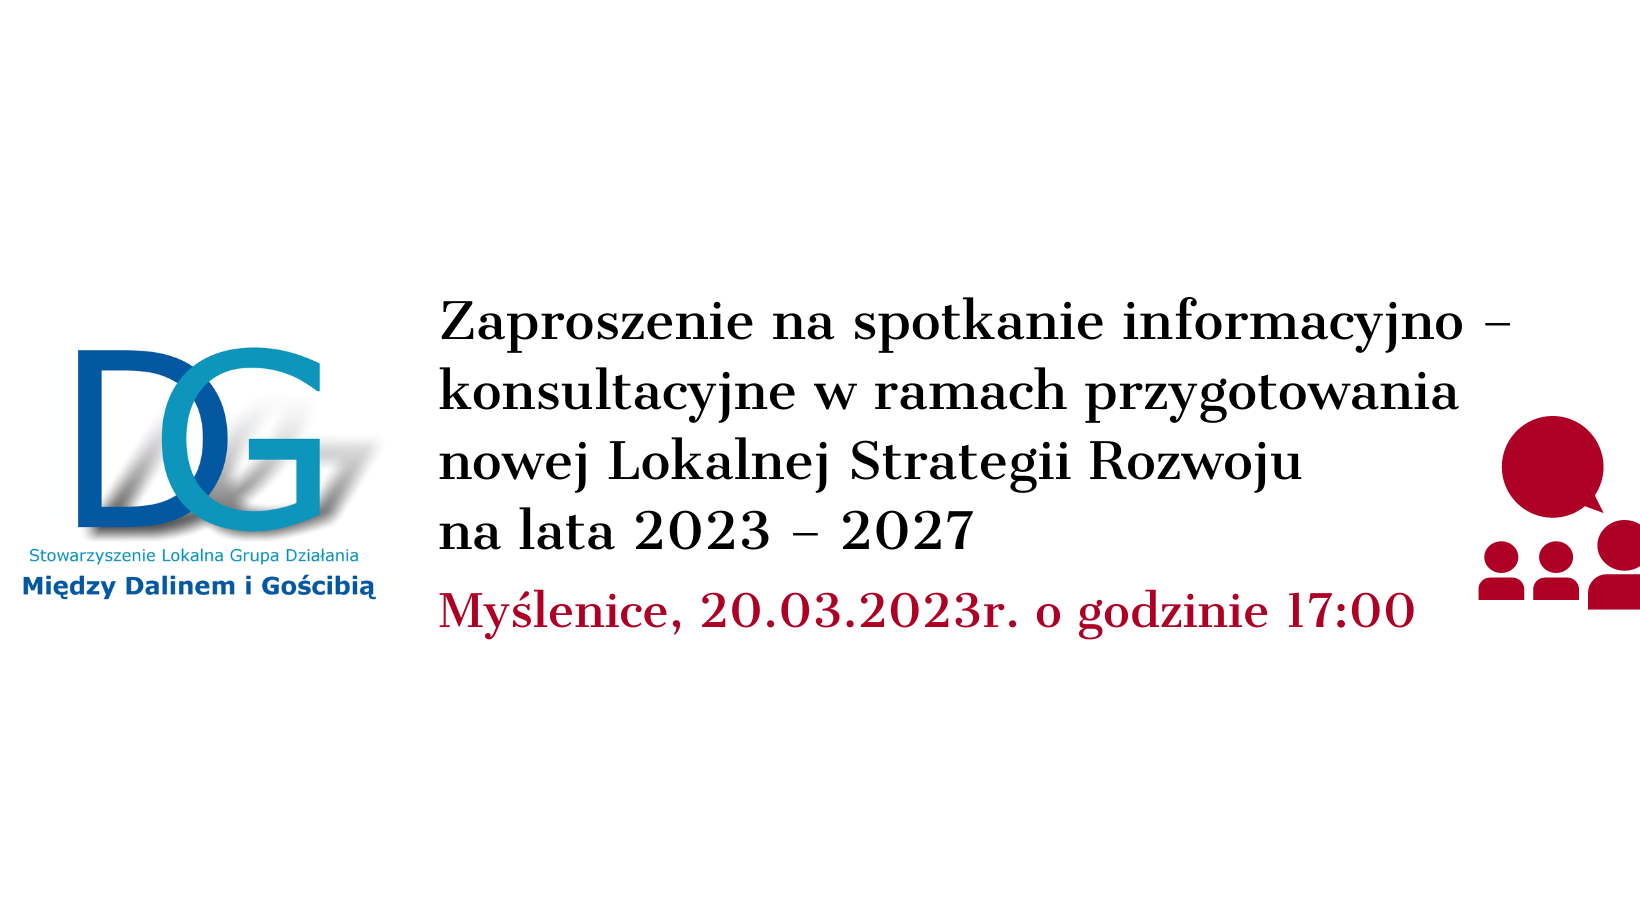 Zaproszenie na spotkanie informacyjno – konsultacyjne w ramach przygotowania nowej Lokalnej Strategii Rozwoju na lata 2023 – 2027 w Myślenicach